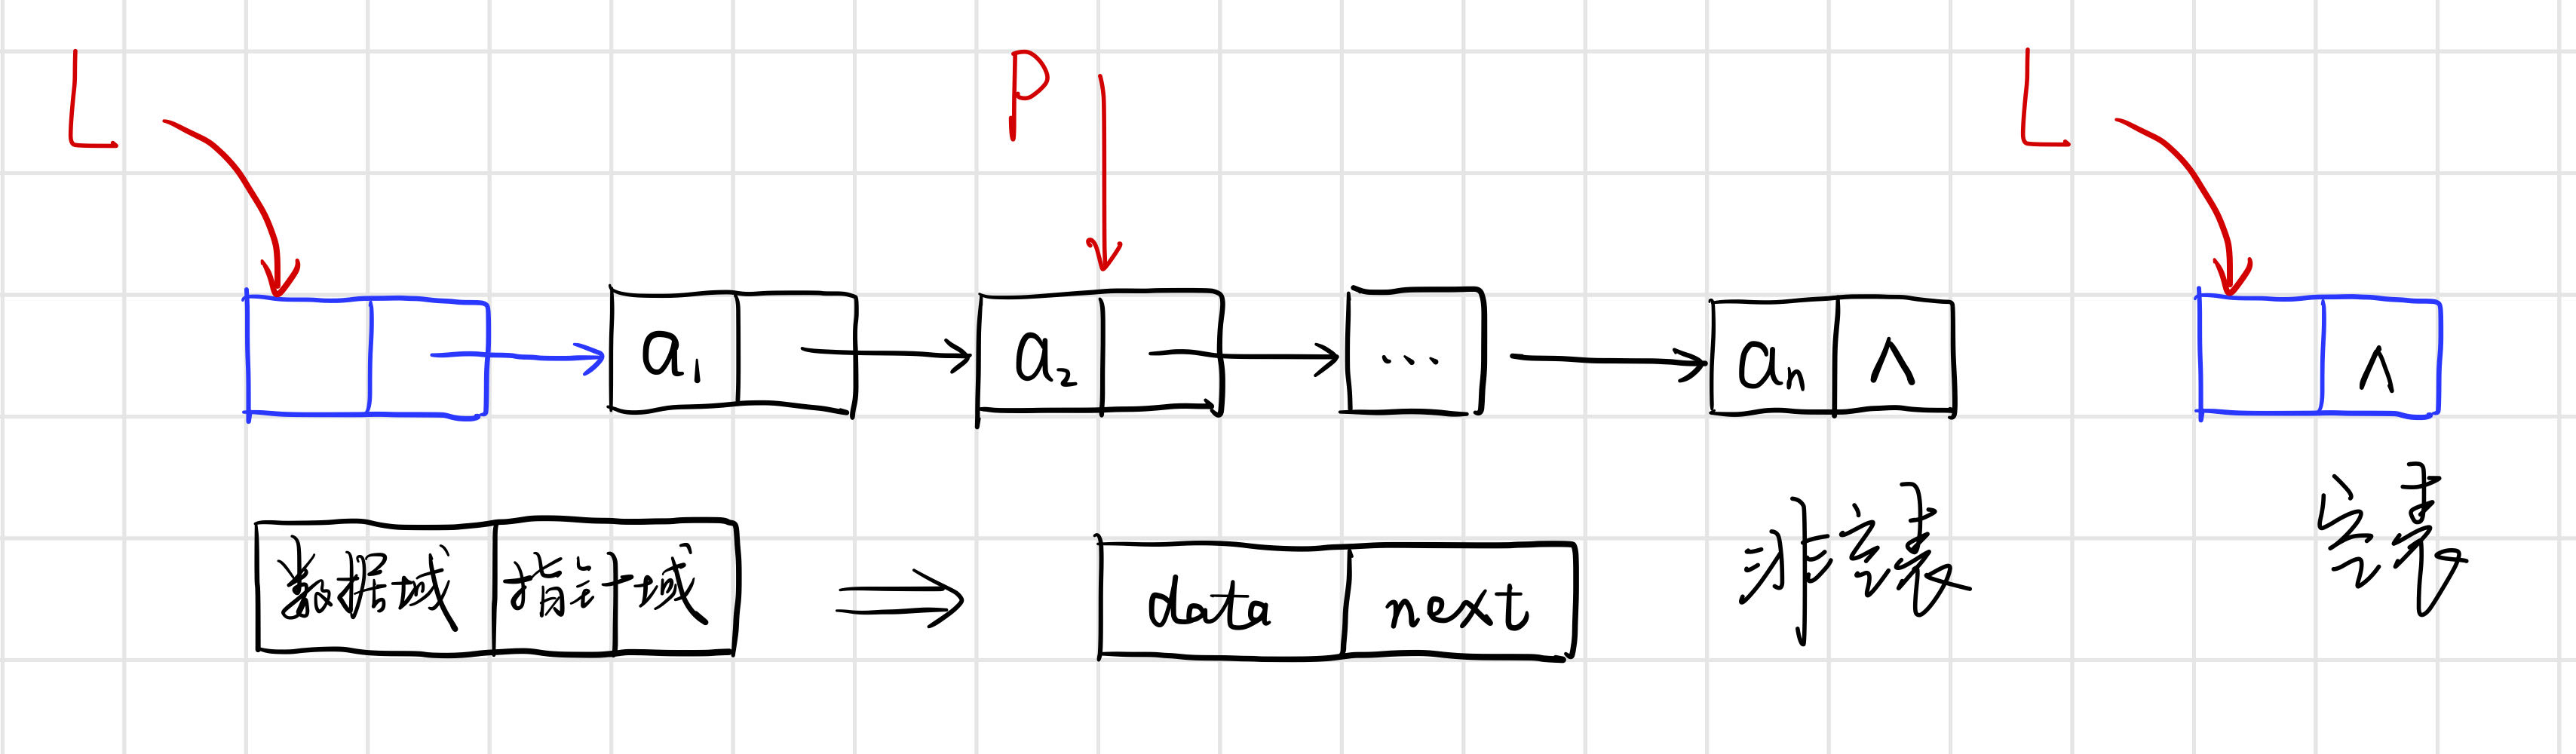 【数据结构与算法学习】线性表（顺序表、单链表、双向链表、循环链表）